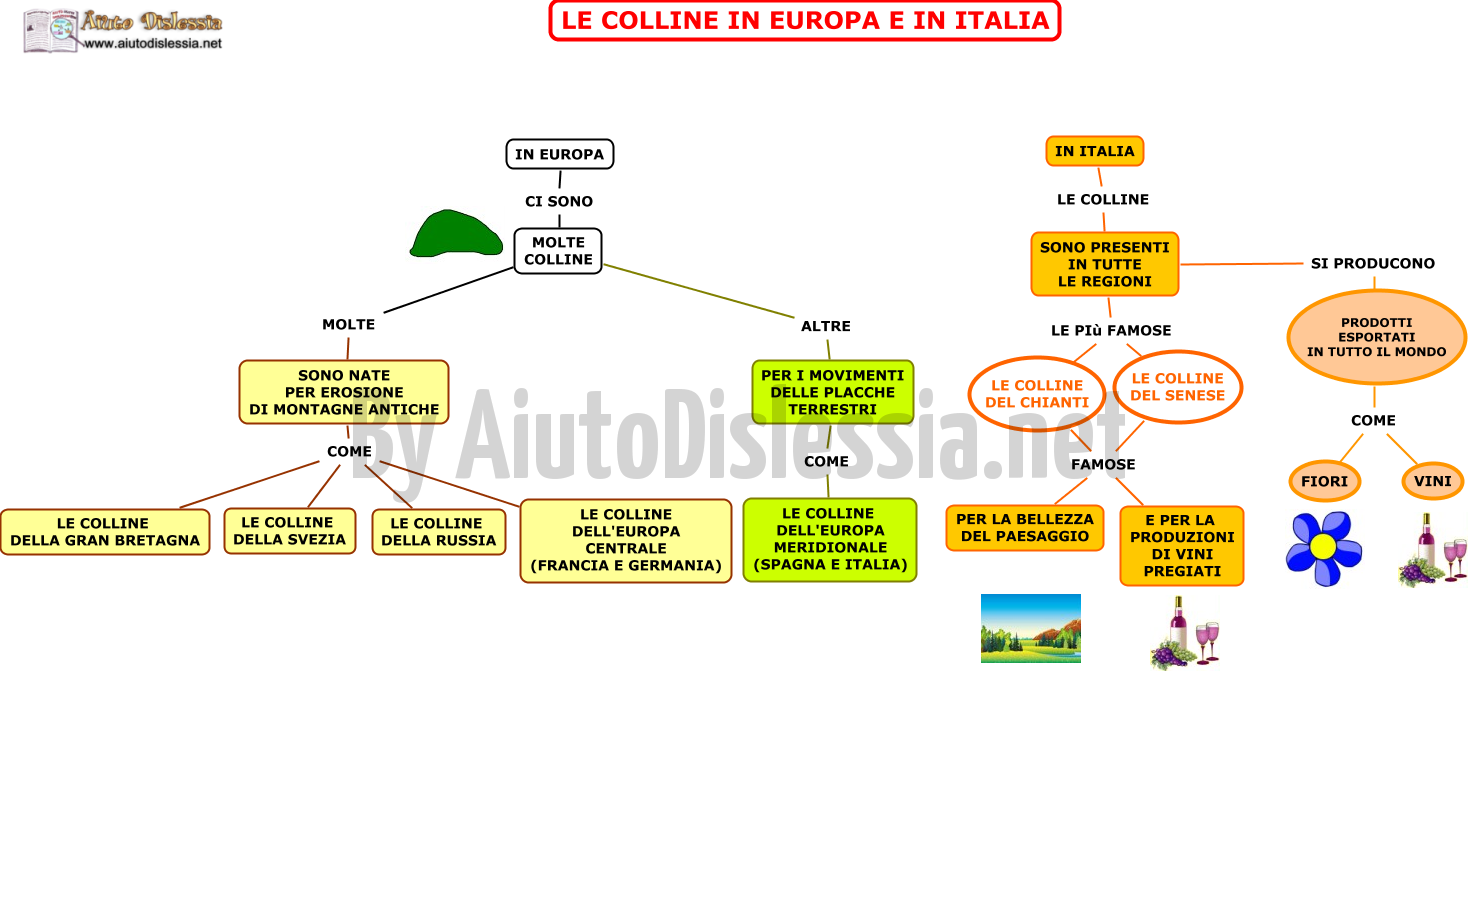 12. LE COLLINE IN EUROPA E IN ITALIA